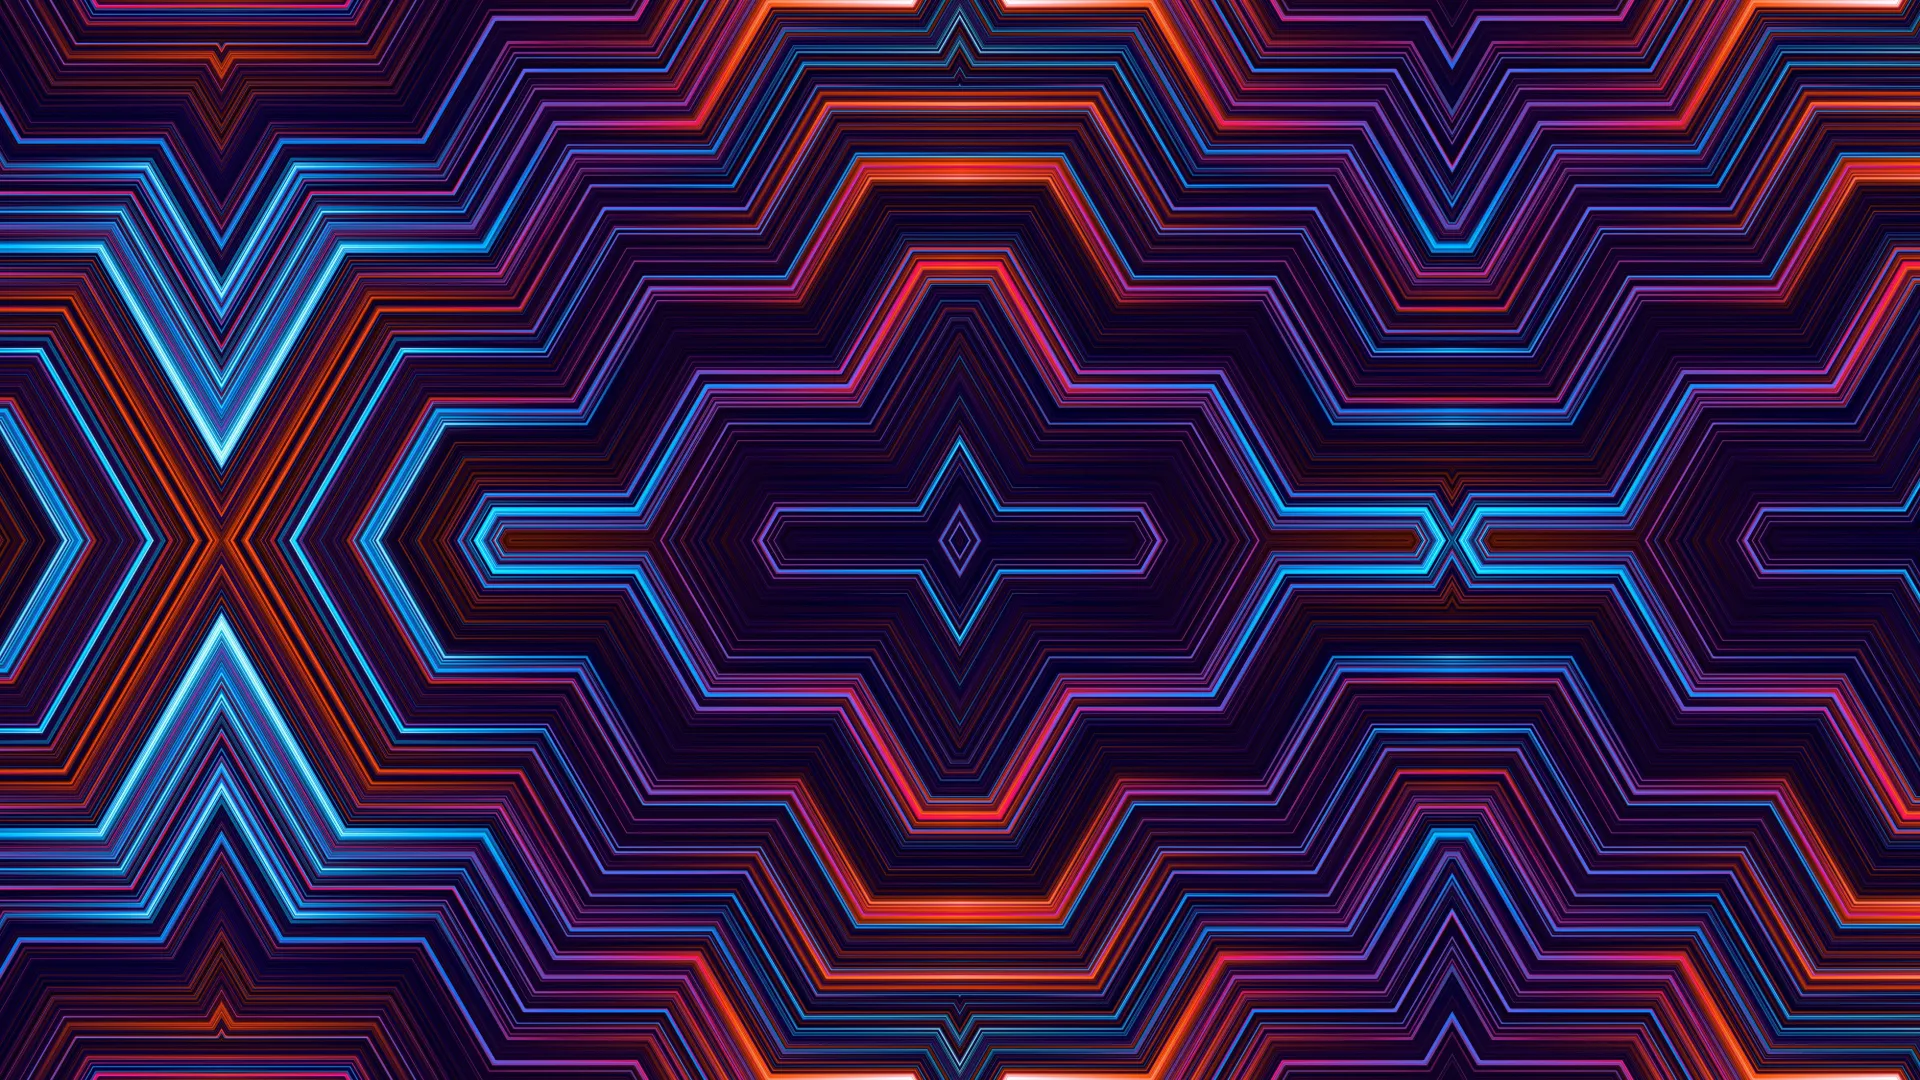  图案 抽象 线条 对角线 五颜六色 AI艺术 紫色  电脑壁纸 4K壁纸